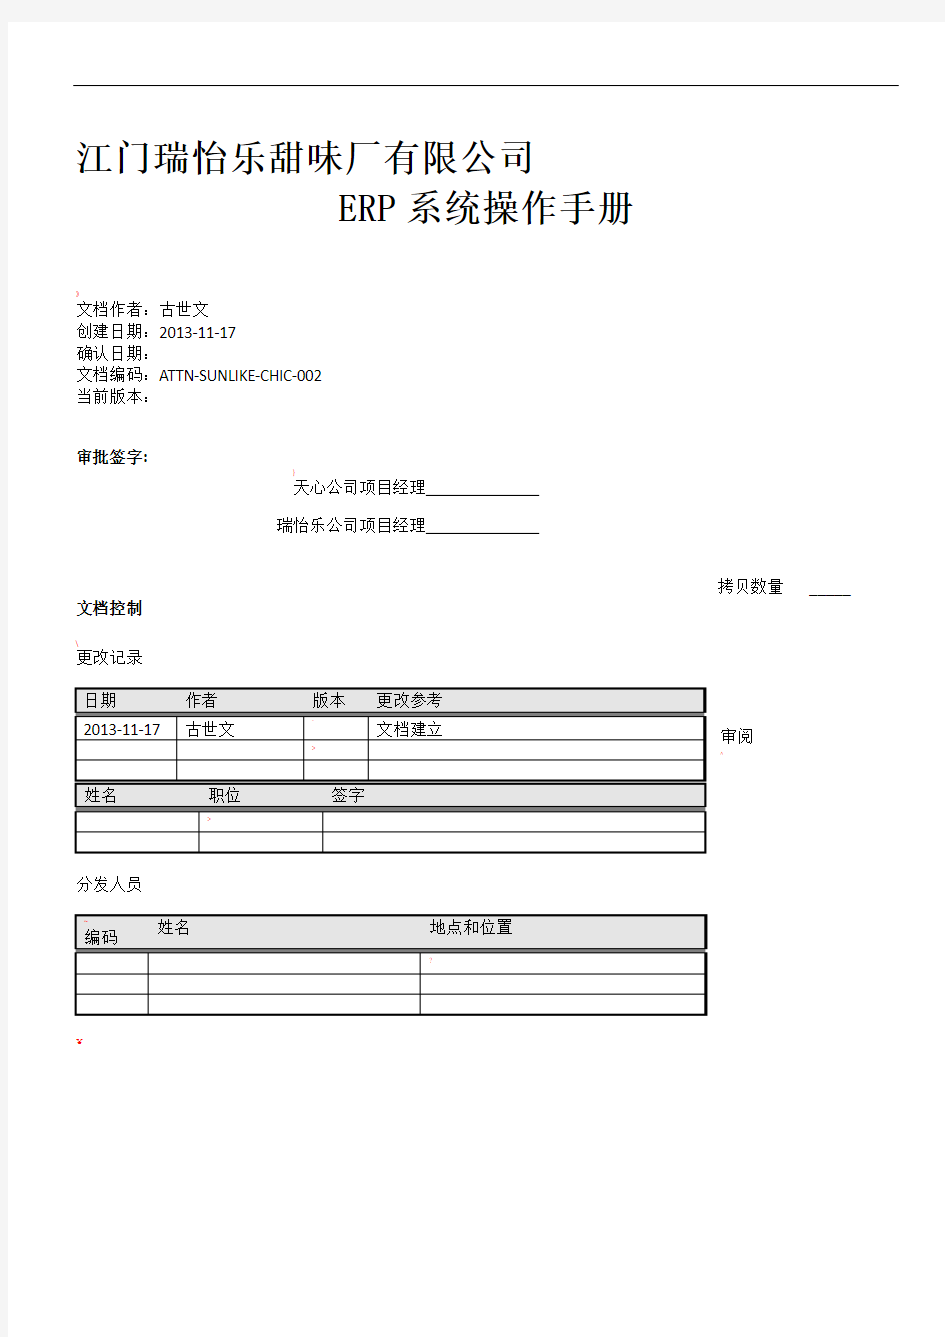 财务部-ERP系统操作手册